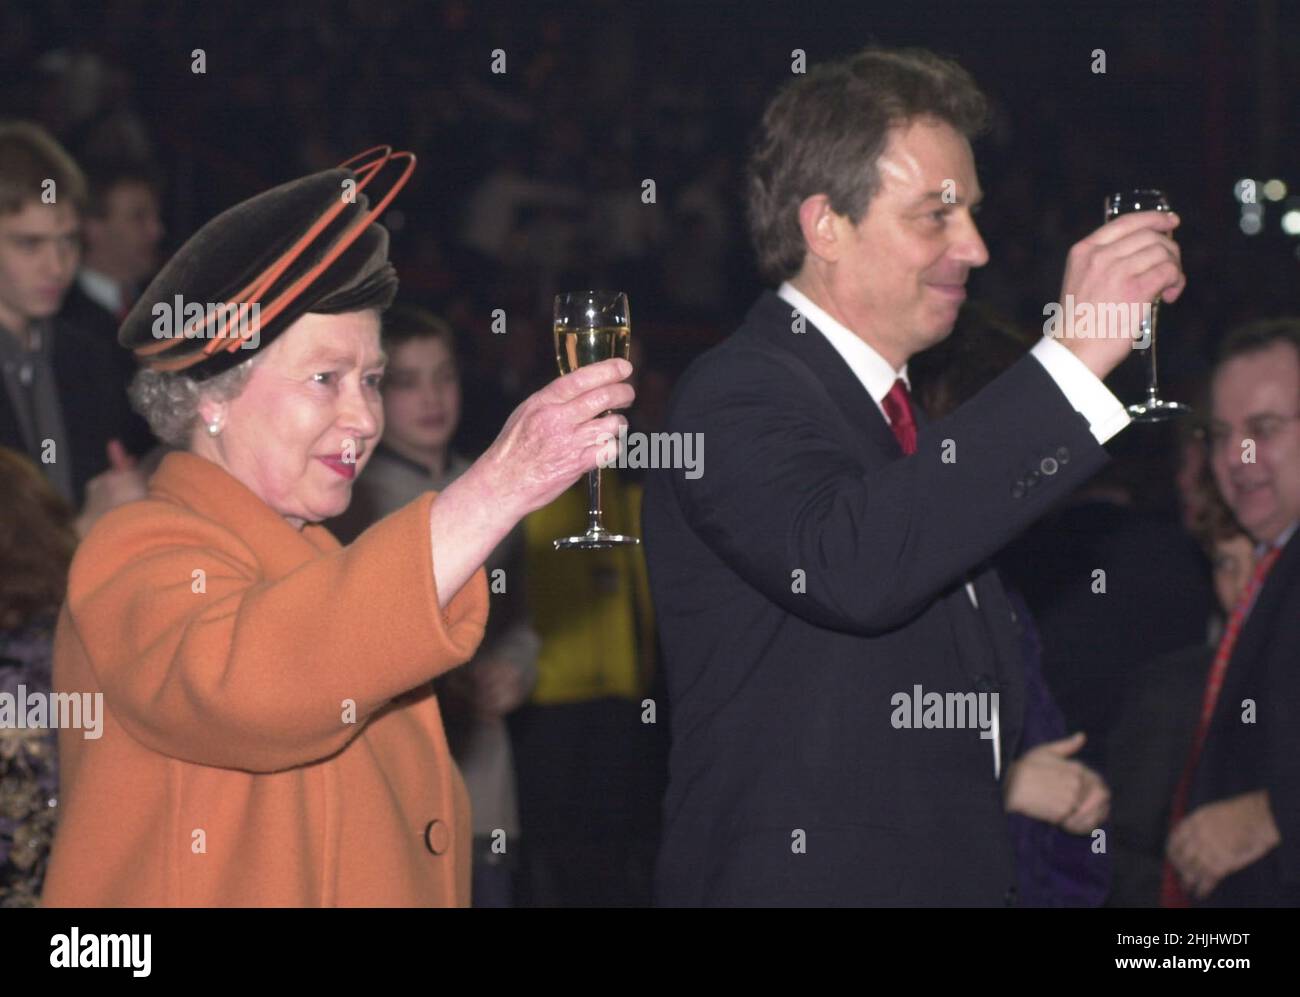 Photo du dossier datée du 1/1/2001, de la reine Elizabeth II et du premier ministre britannique Tony Blair qui élèvent leurs lunettes lors des grèves de minuit lors des célébrations d'ouverture au Millennium Dome de Greenwich, dans le sud-est de Londres.Date de publication : dimanche 30 janvier 2022. Banque D'Images